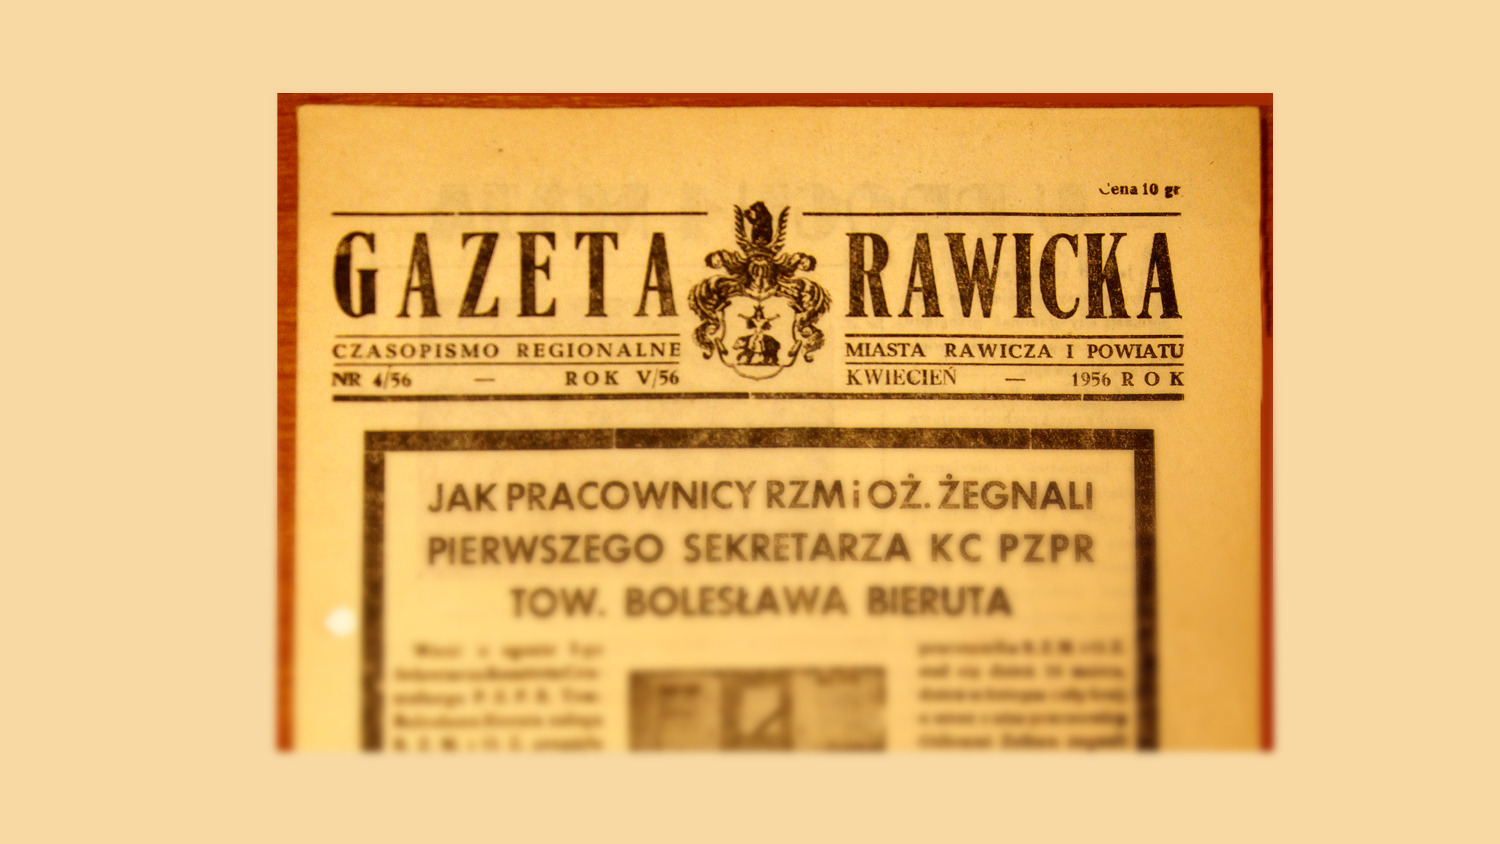 Drugie życie rawickich gazet. Jak Gazomet żegnał Bolesława Bieruta - Zdjęcie główne